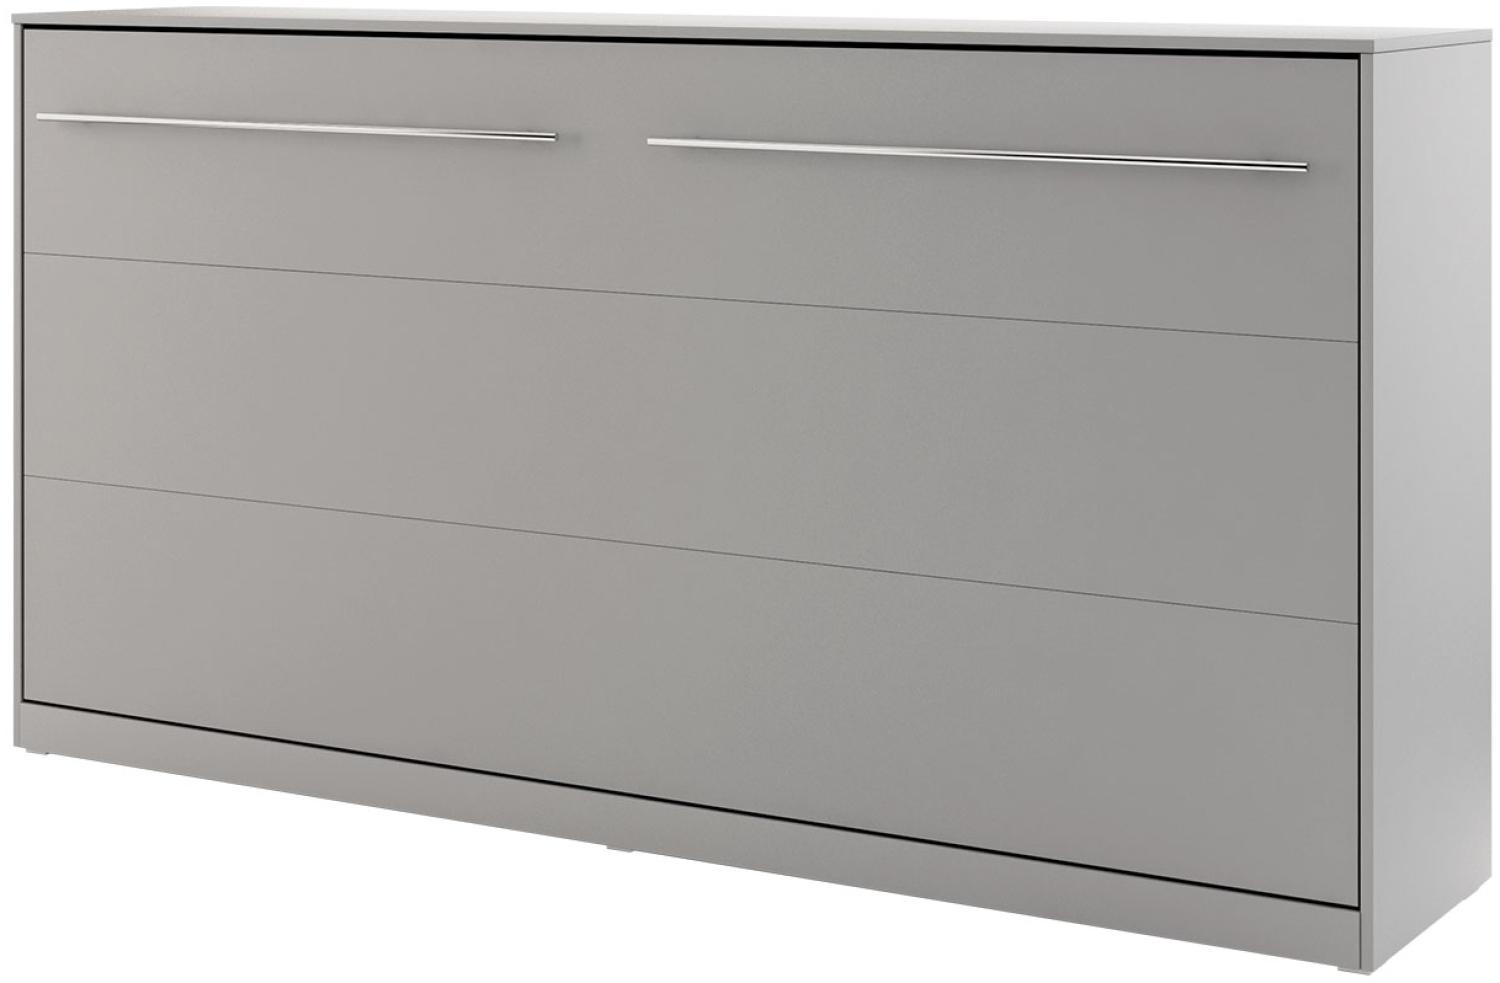 Schrankbett Concept Pro II Horizontal CP-06 (Farbe: Grau, Größe: 90x200 cm) Bild 1